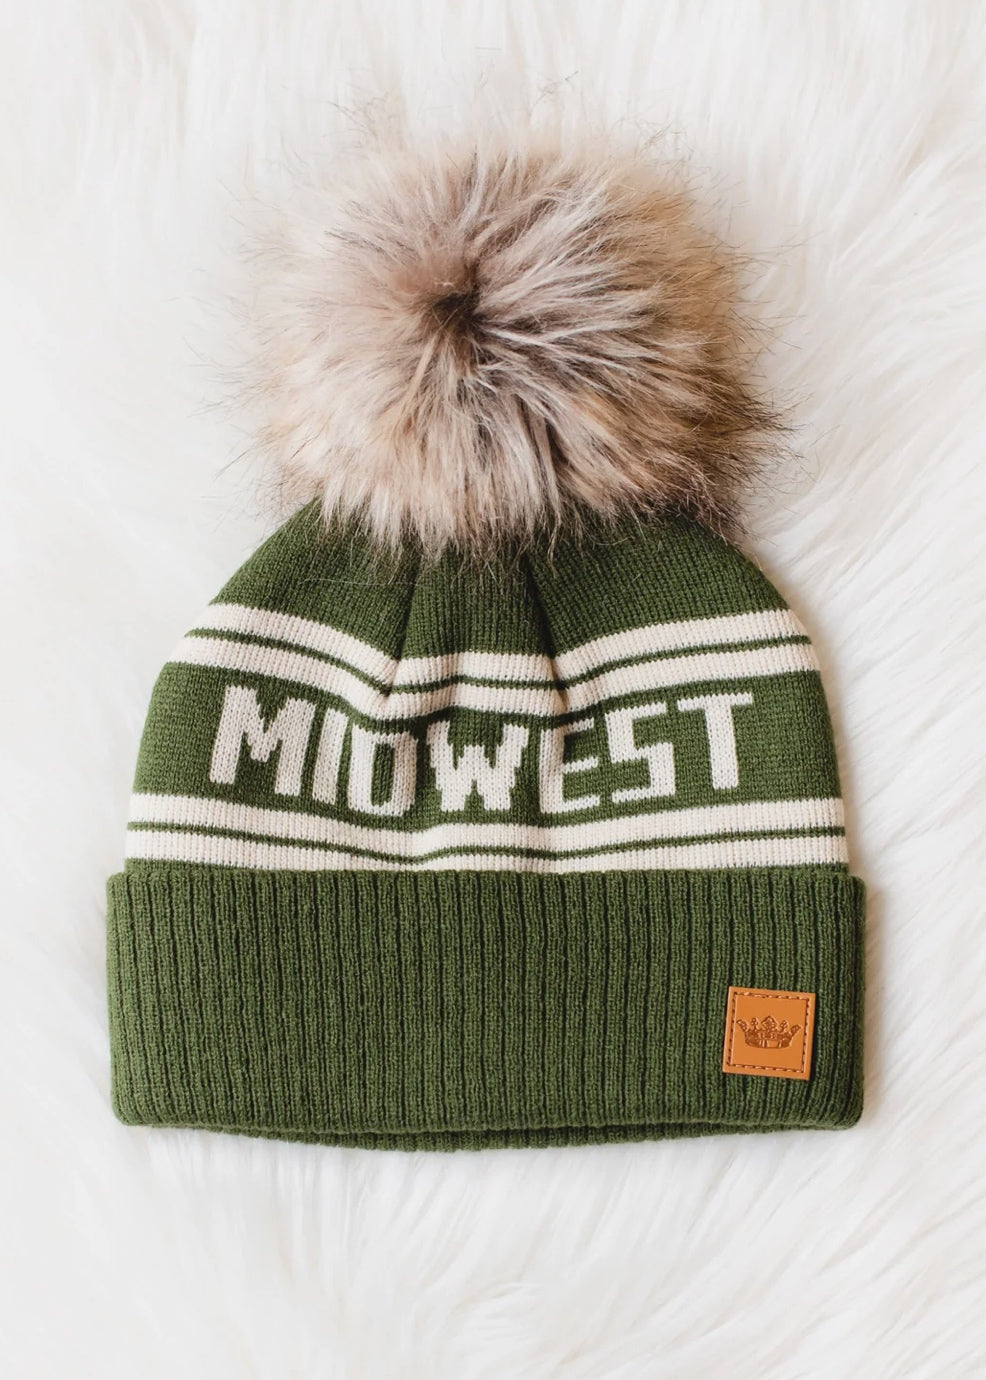 Midwest Pom Pom Hat